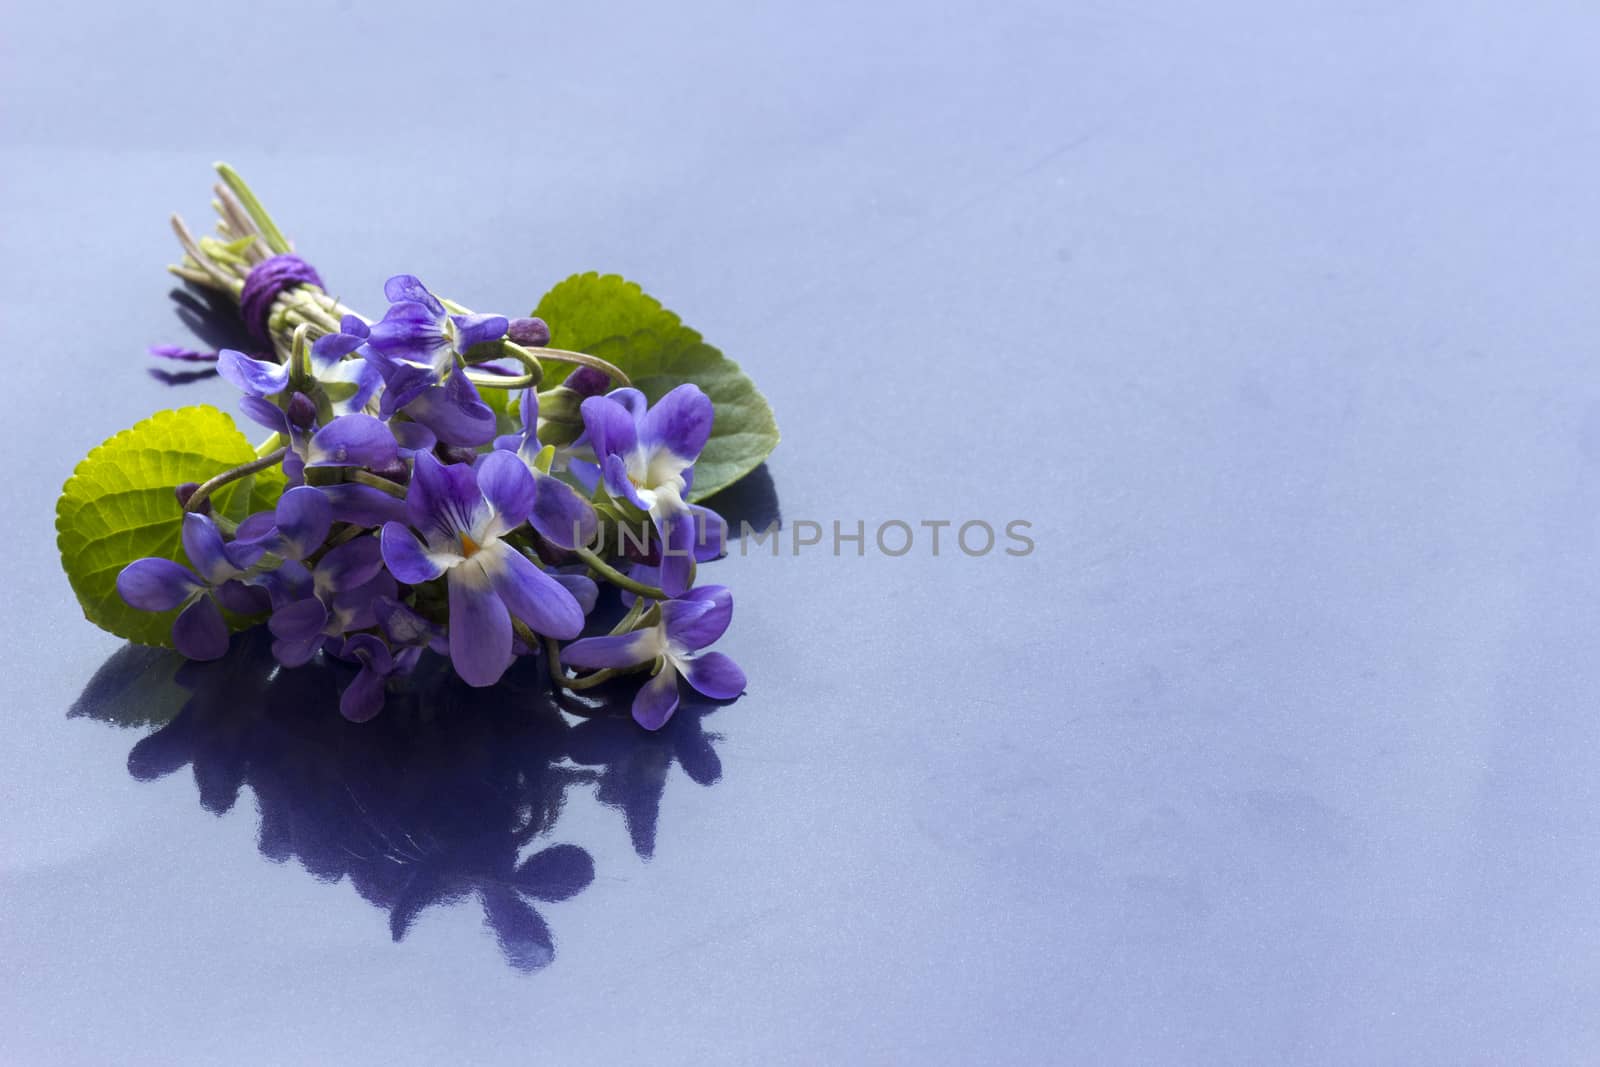  Bouquet of violets flowers